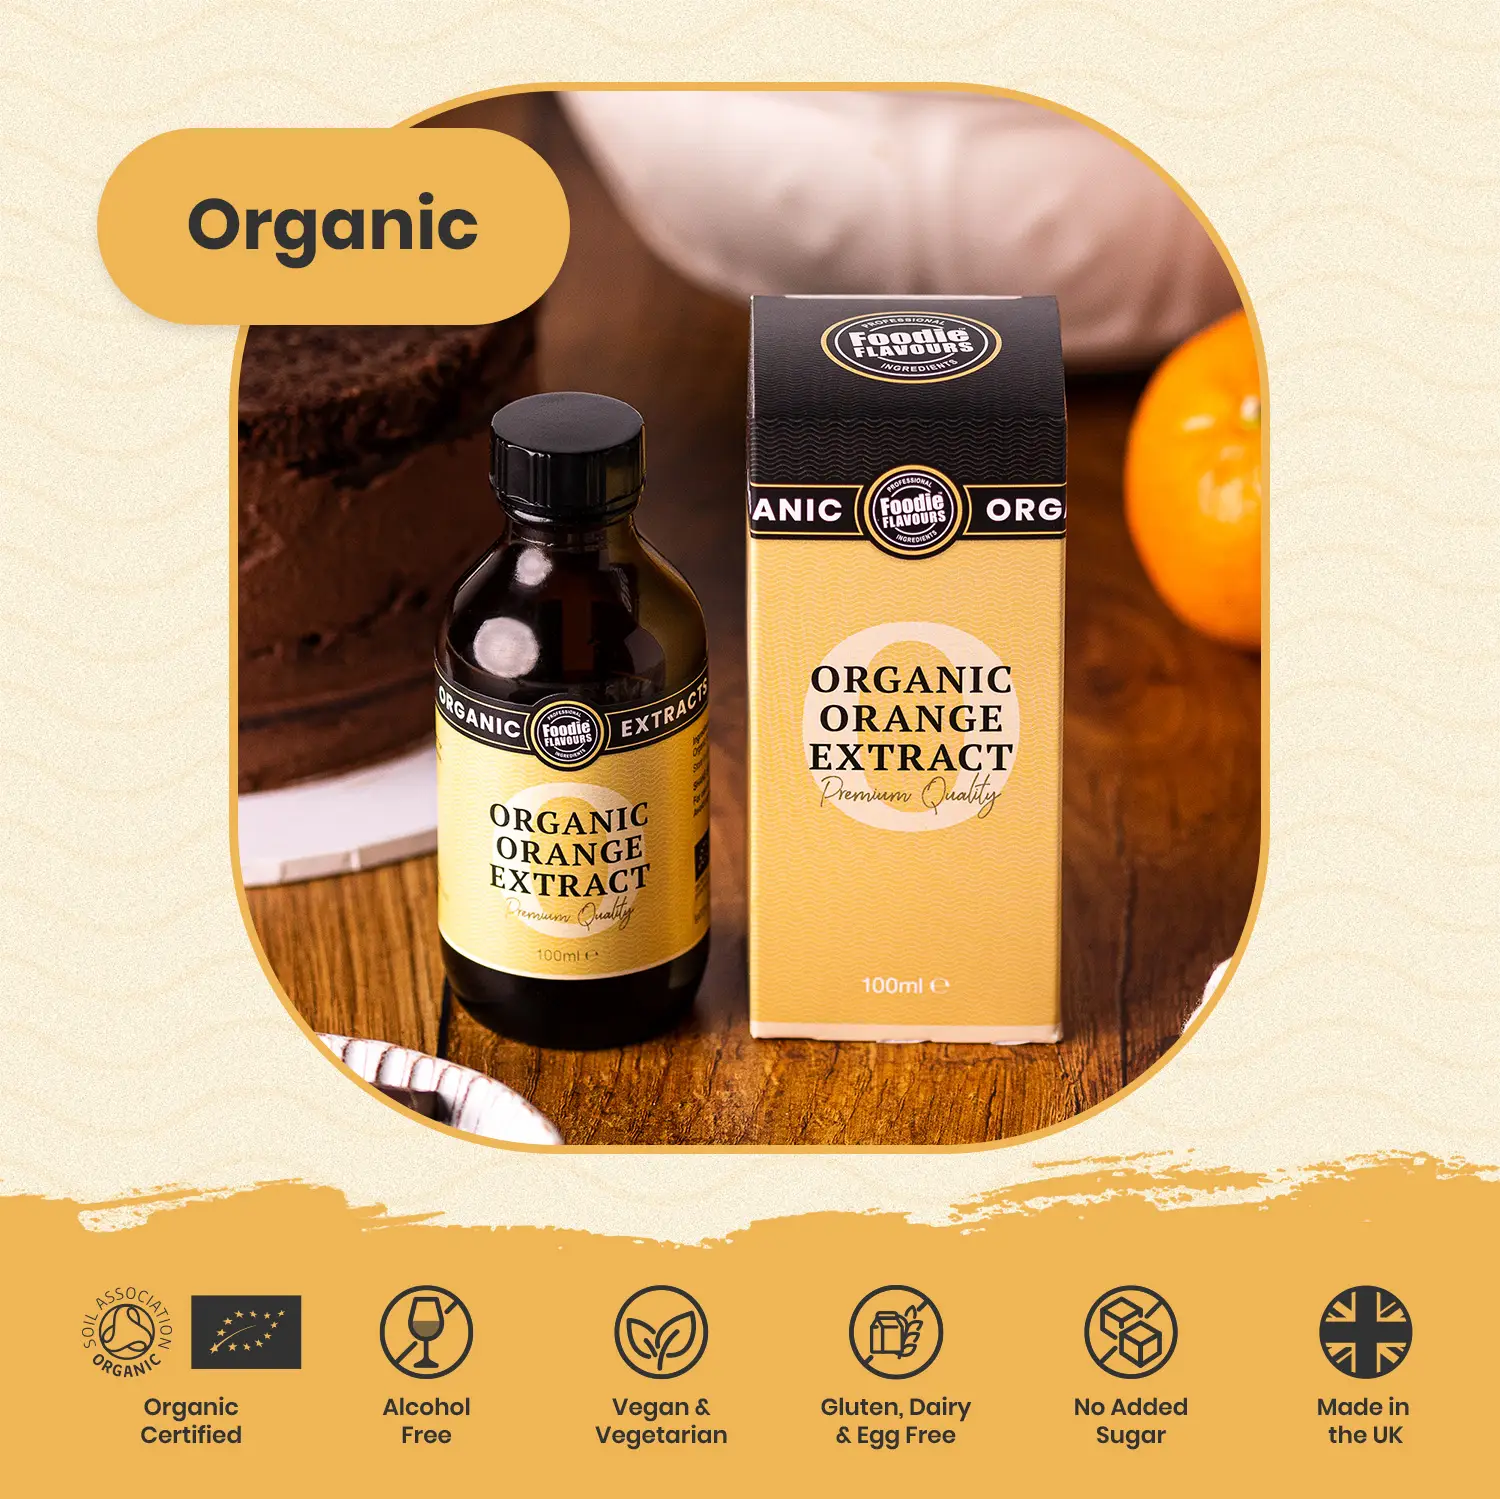 Organic Orange Extract - Features